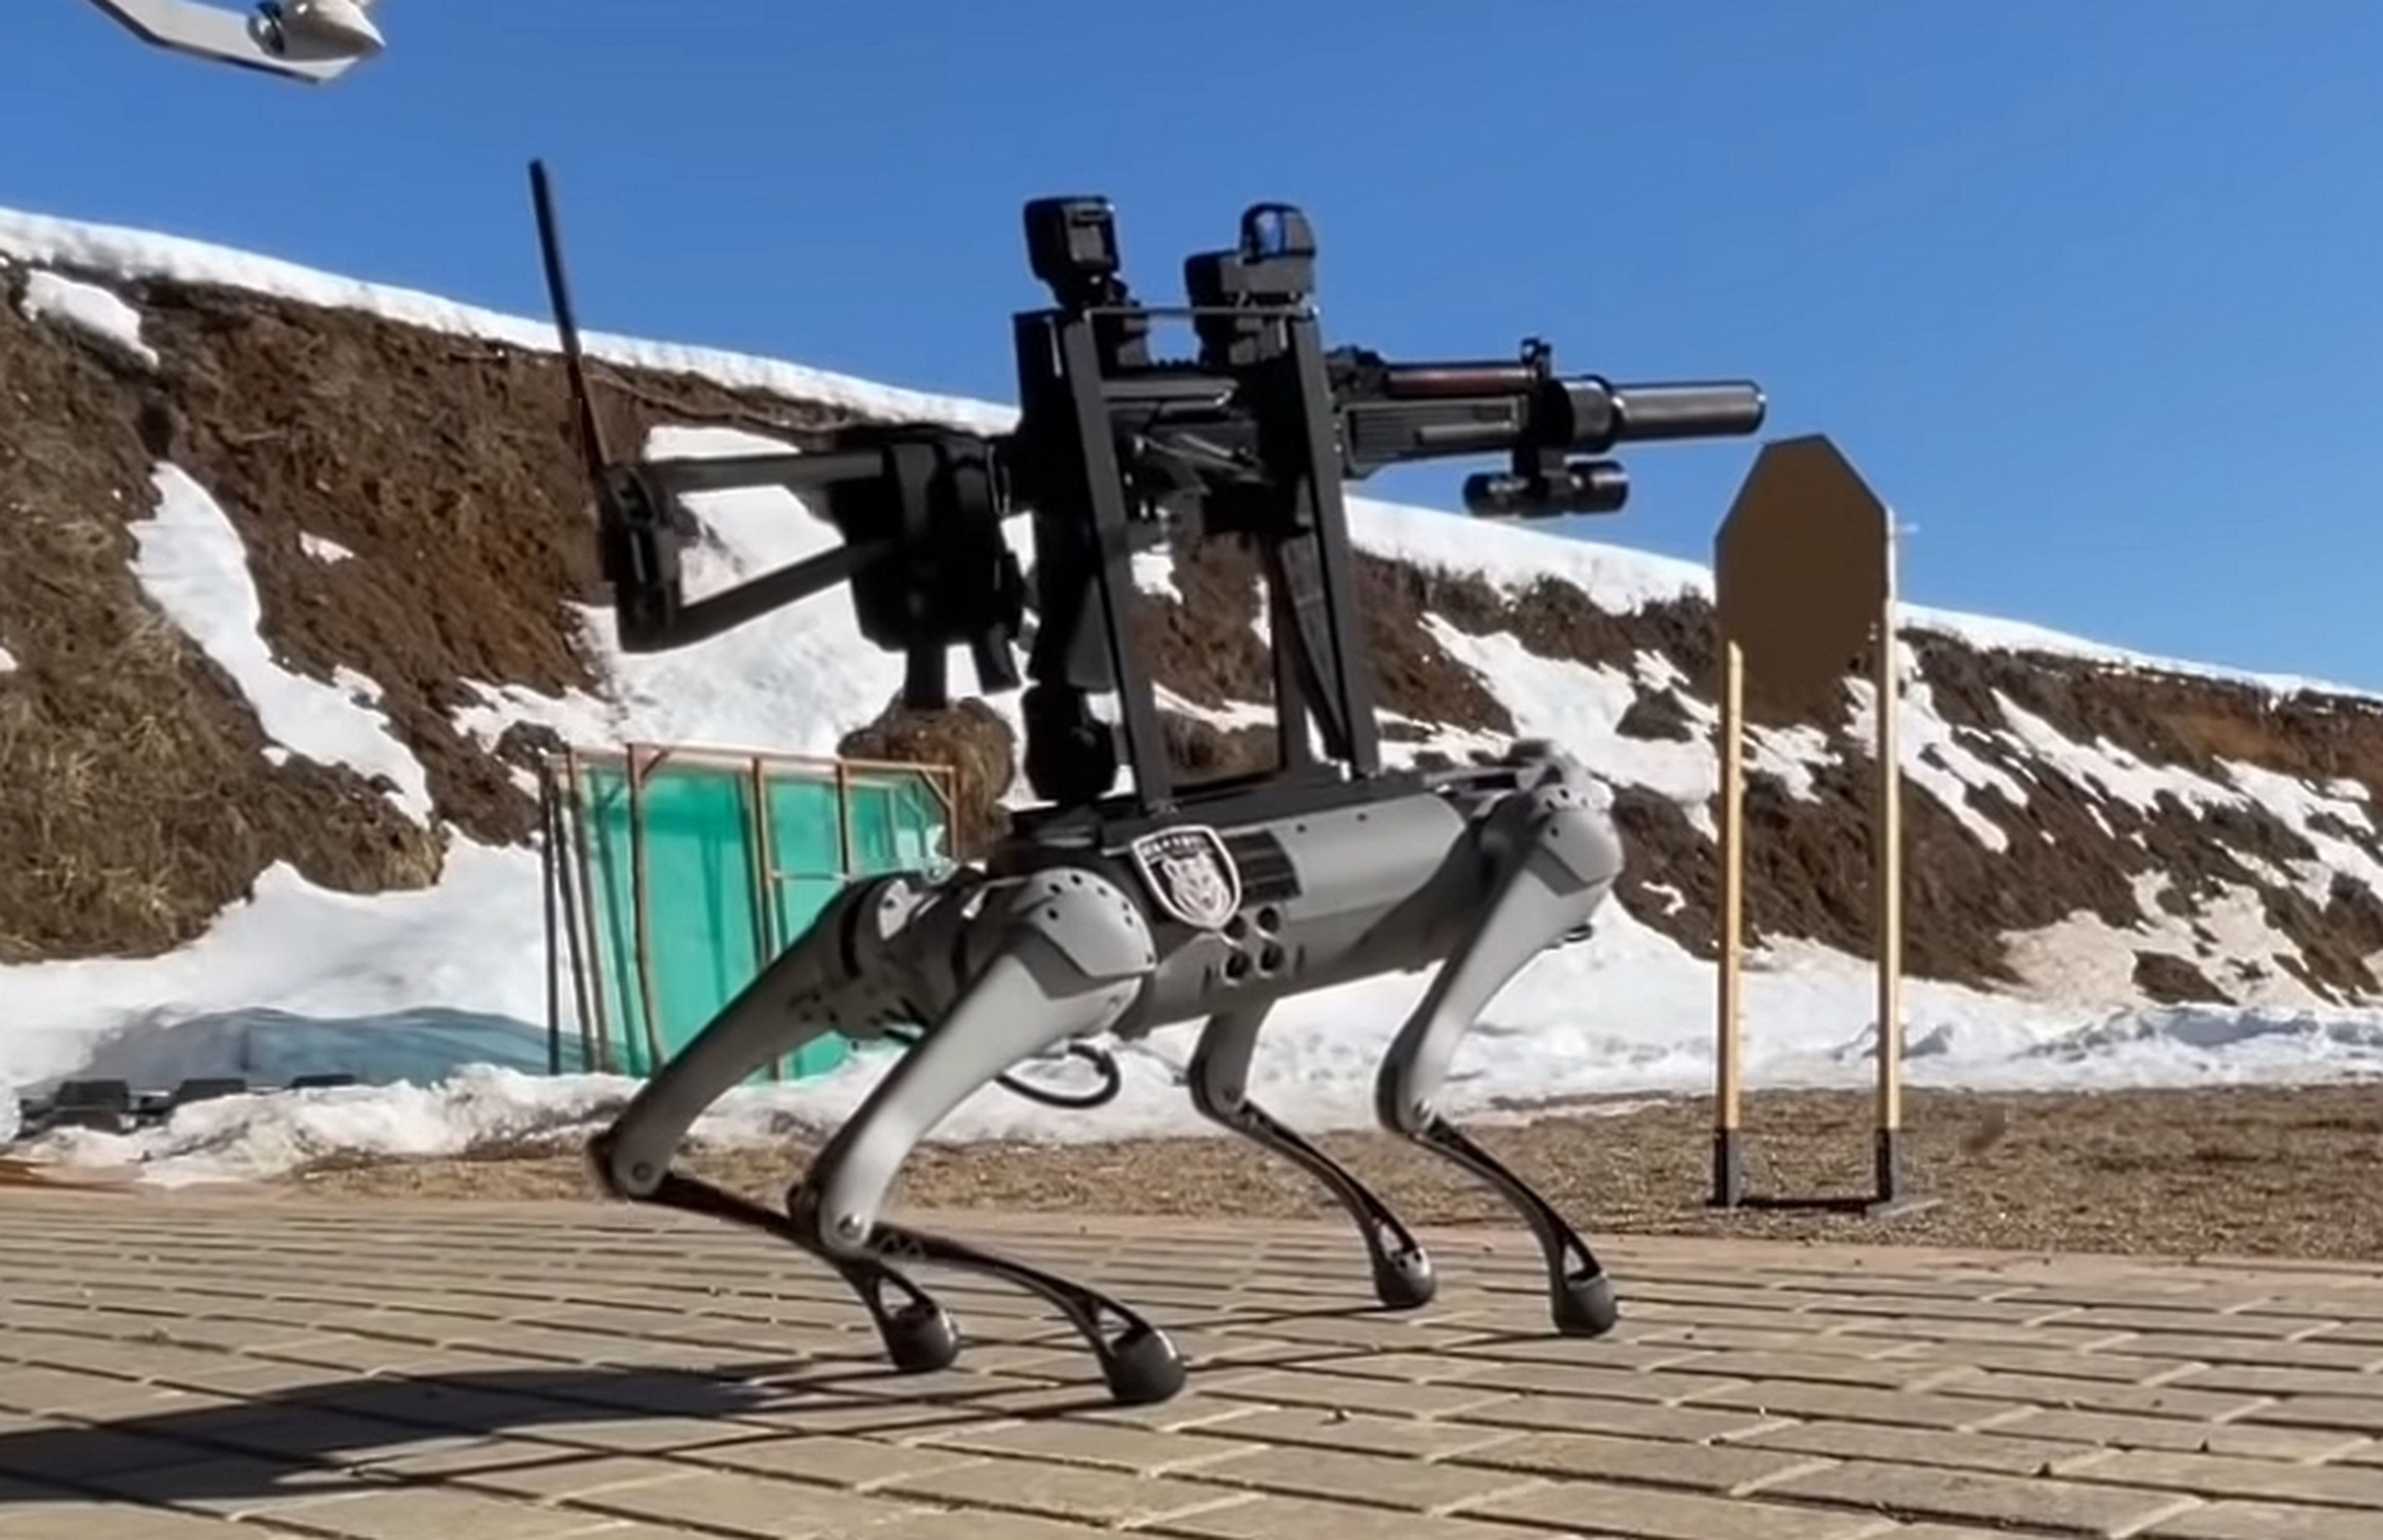 Perro robot disparando una metralleta, ¿qué puede salir mal?